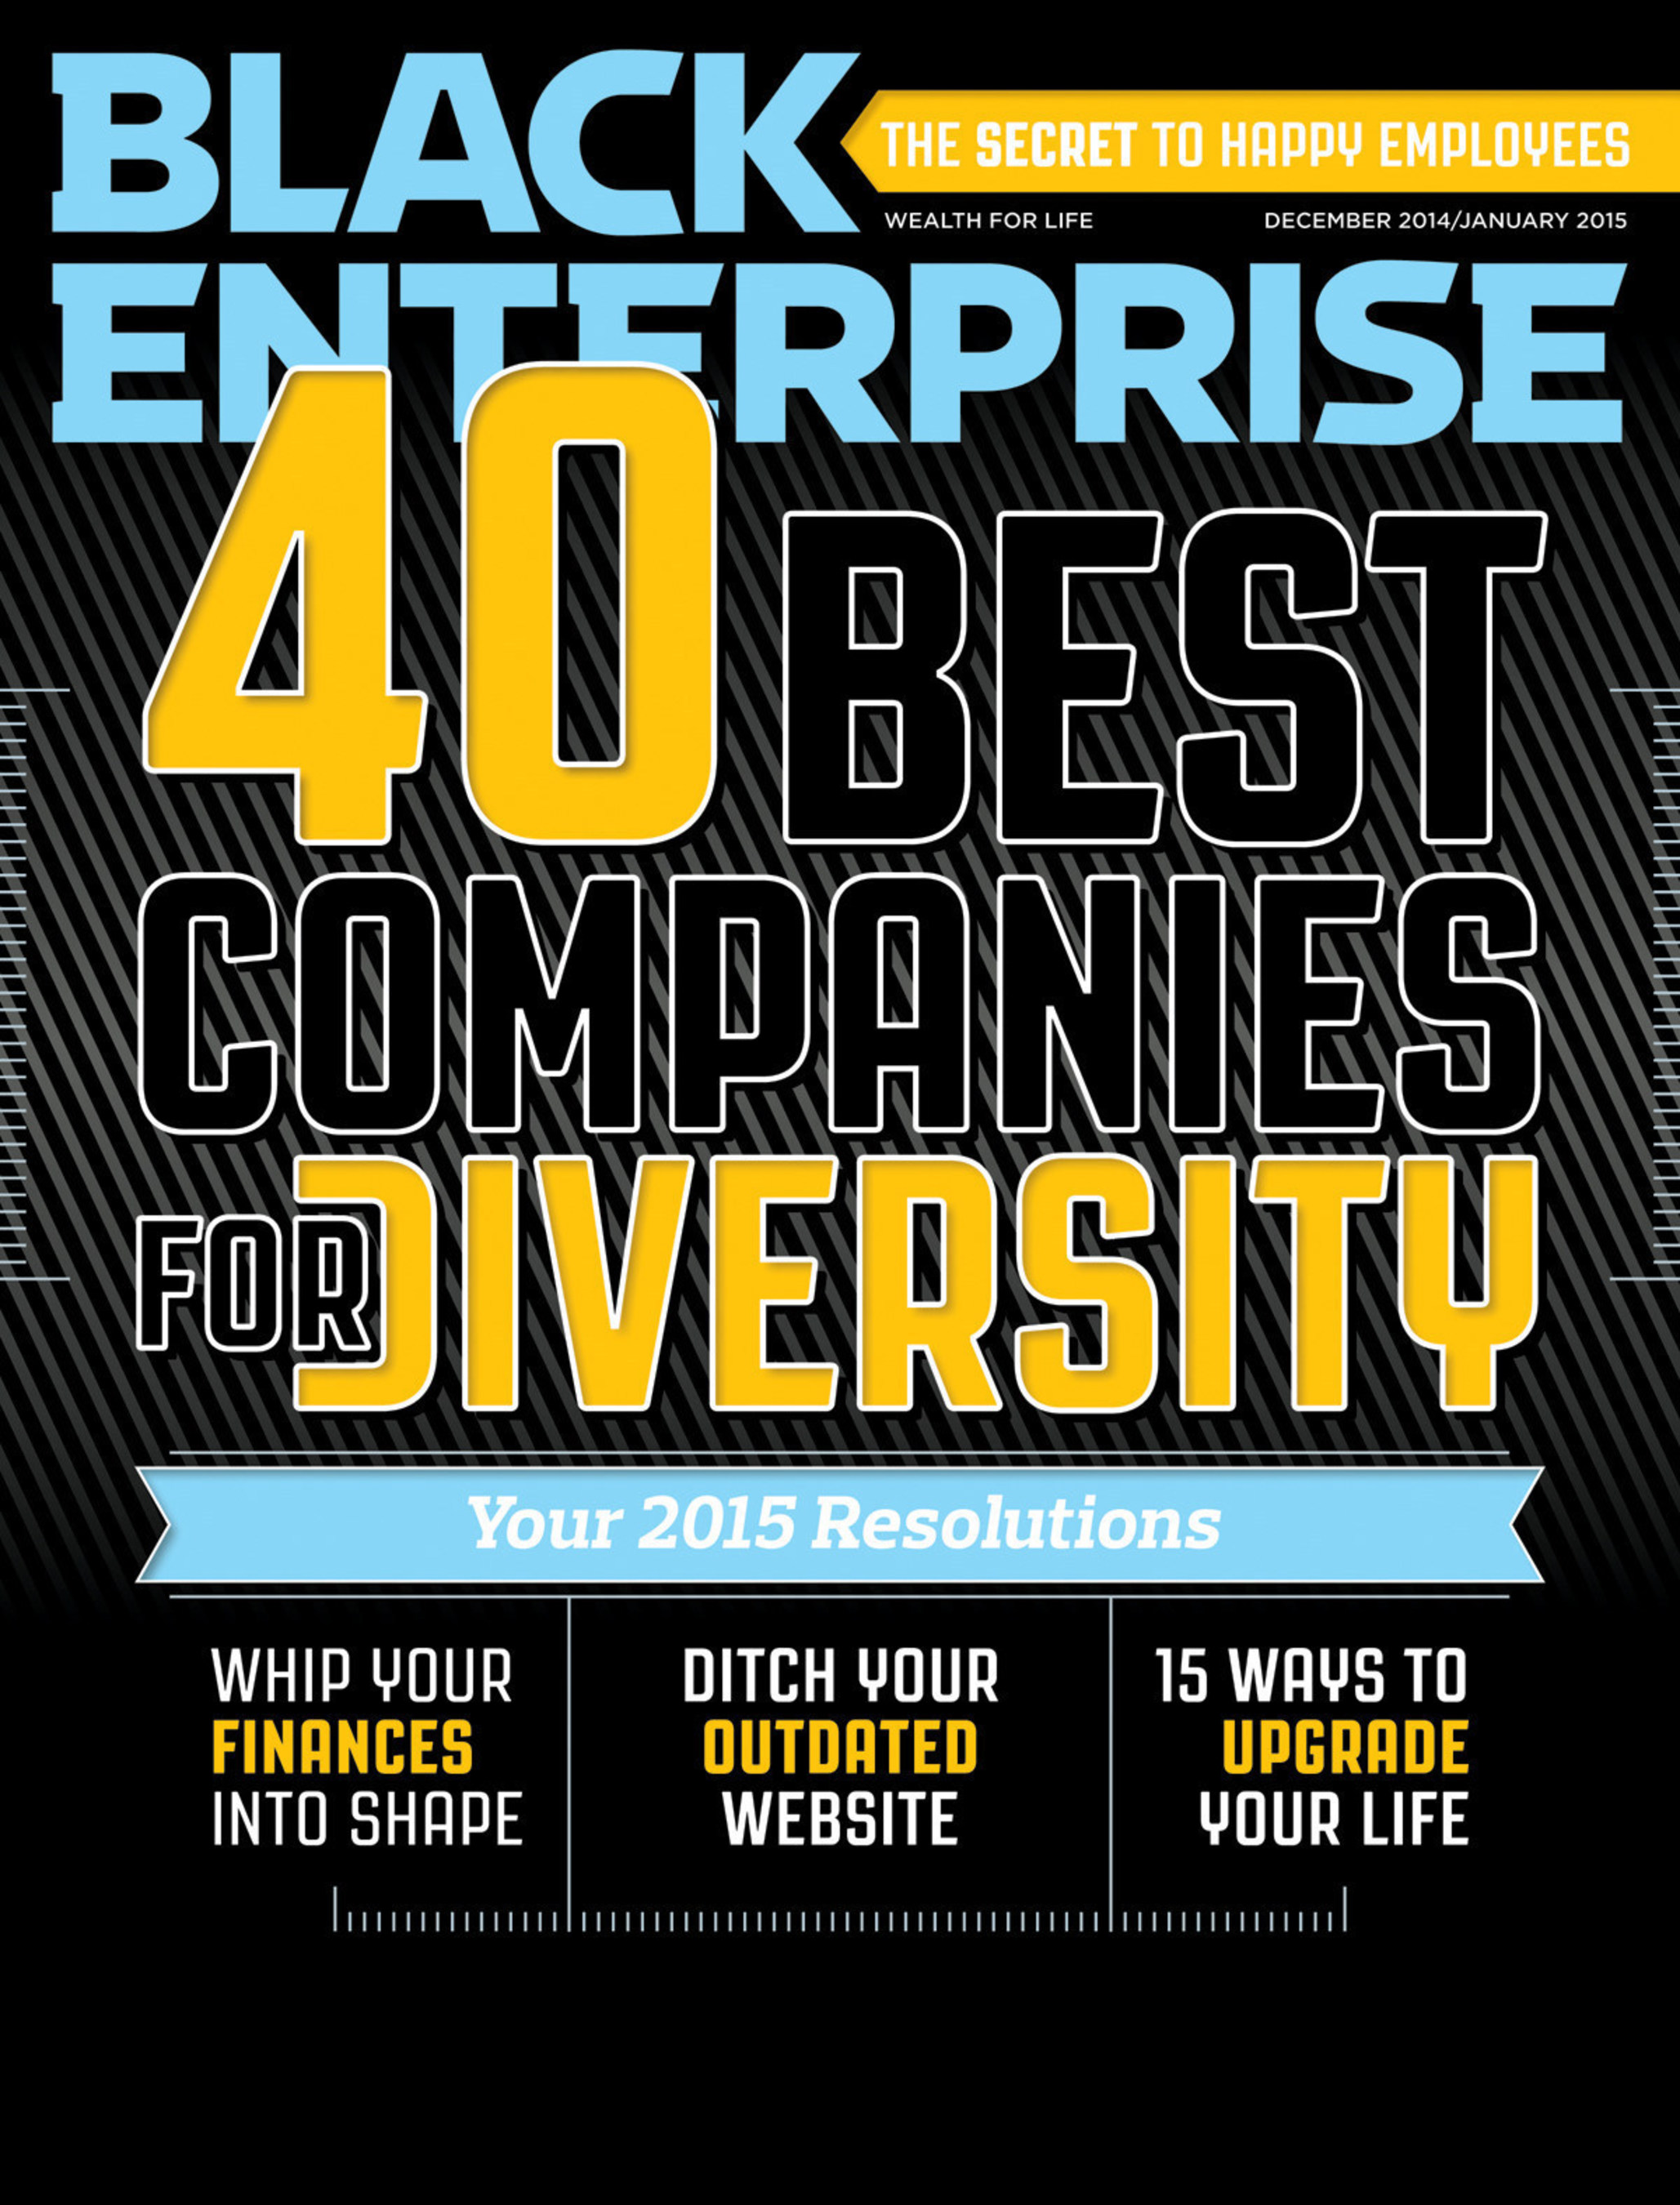 Black Enterprise 40 Best Companies for Diversity 2014 List